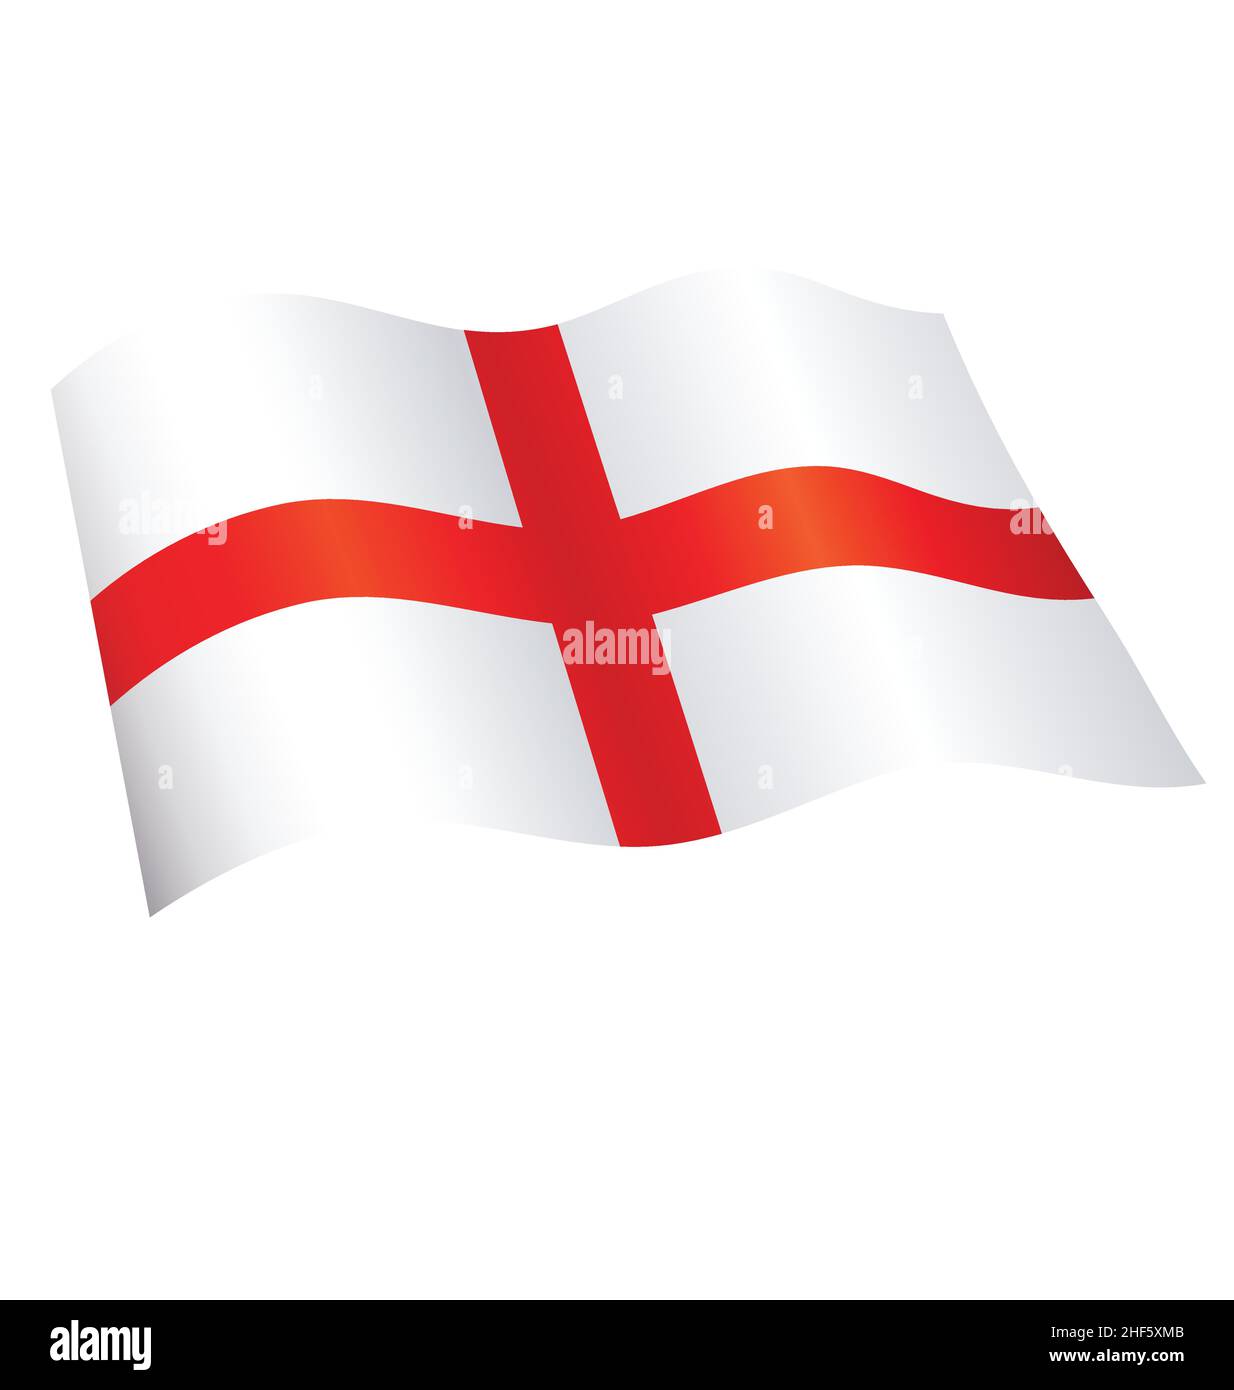 Fliegende winkende englische Flagge von england st georges Kreuzvektor isoliert auf weißem Hintergrund Stock Vektor